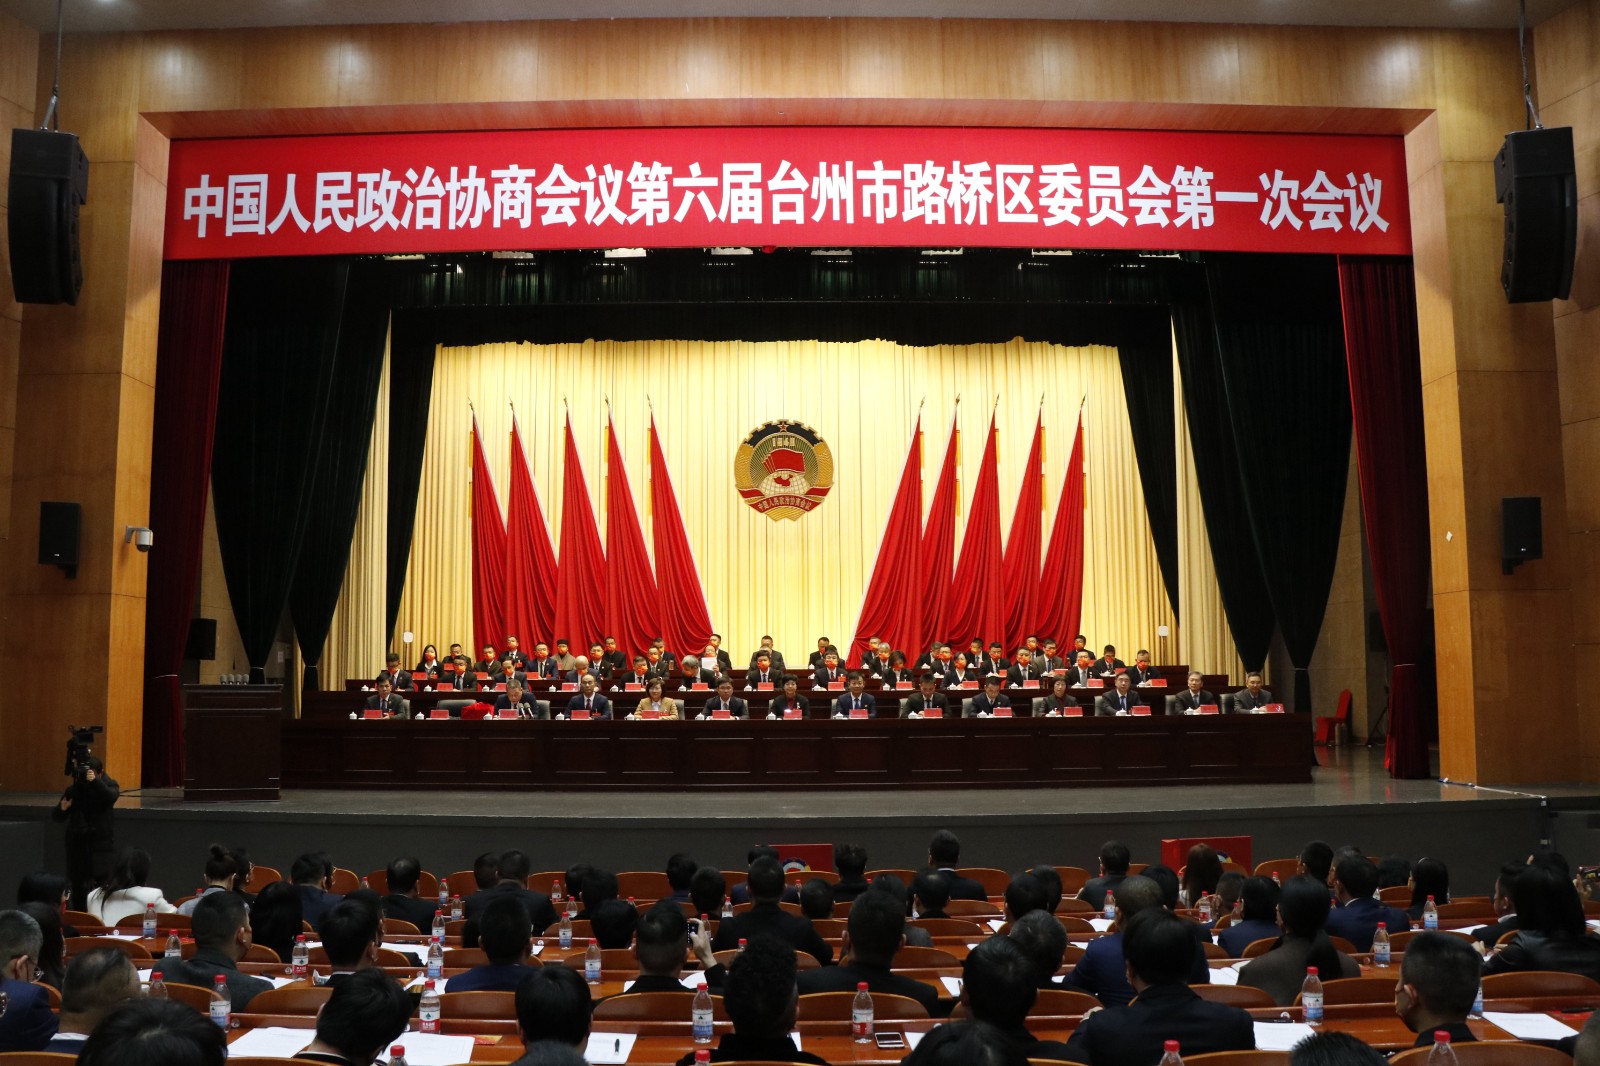 2月20日上午,政协第六届台州市路桥区委员会第一次会议举行第三次全体